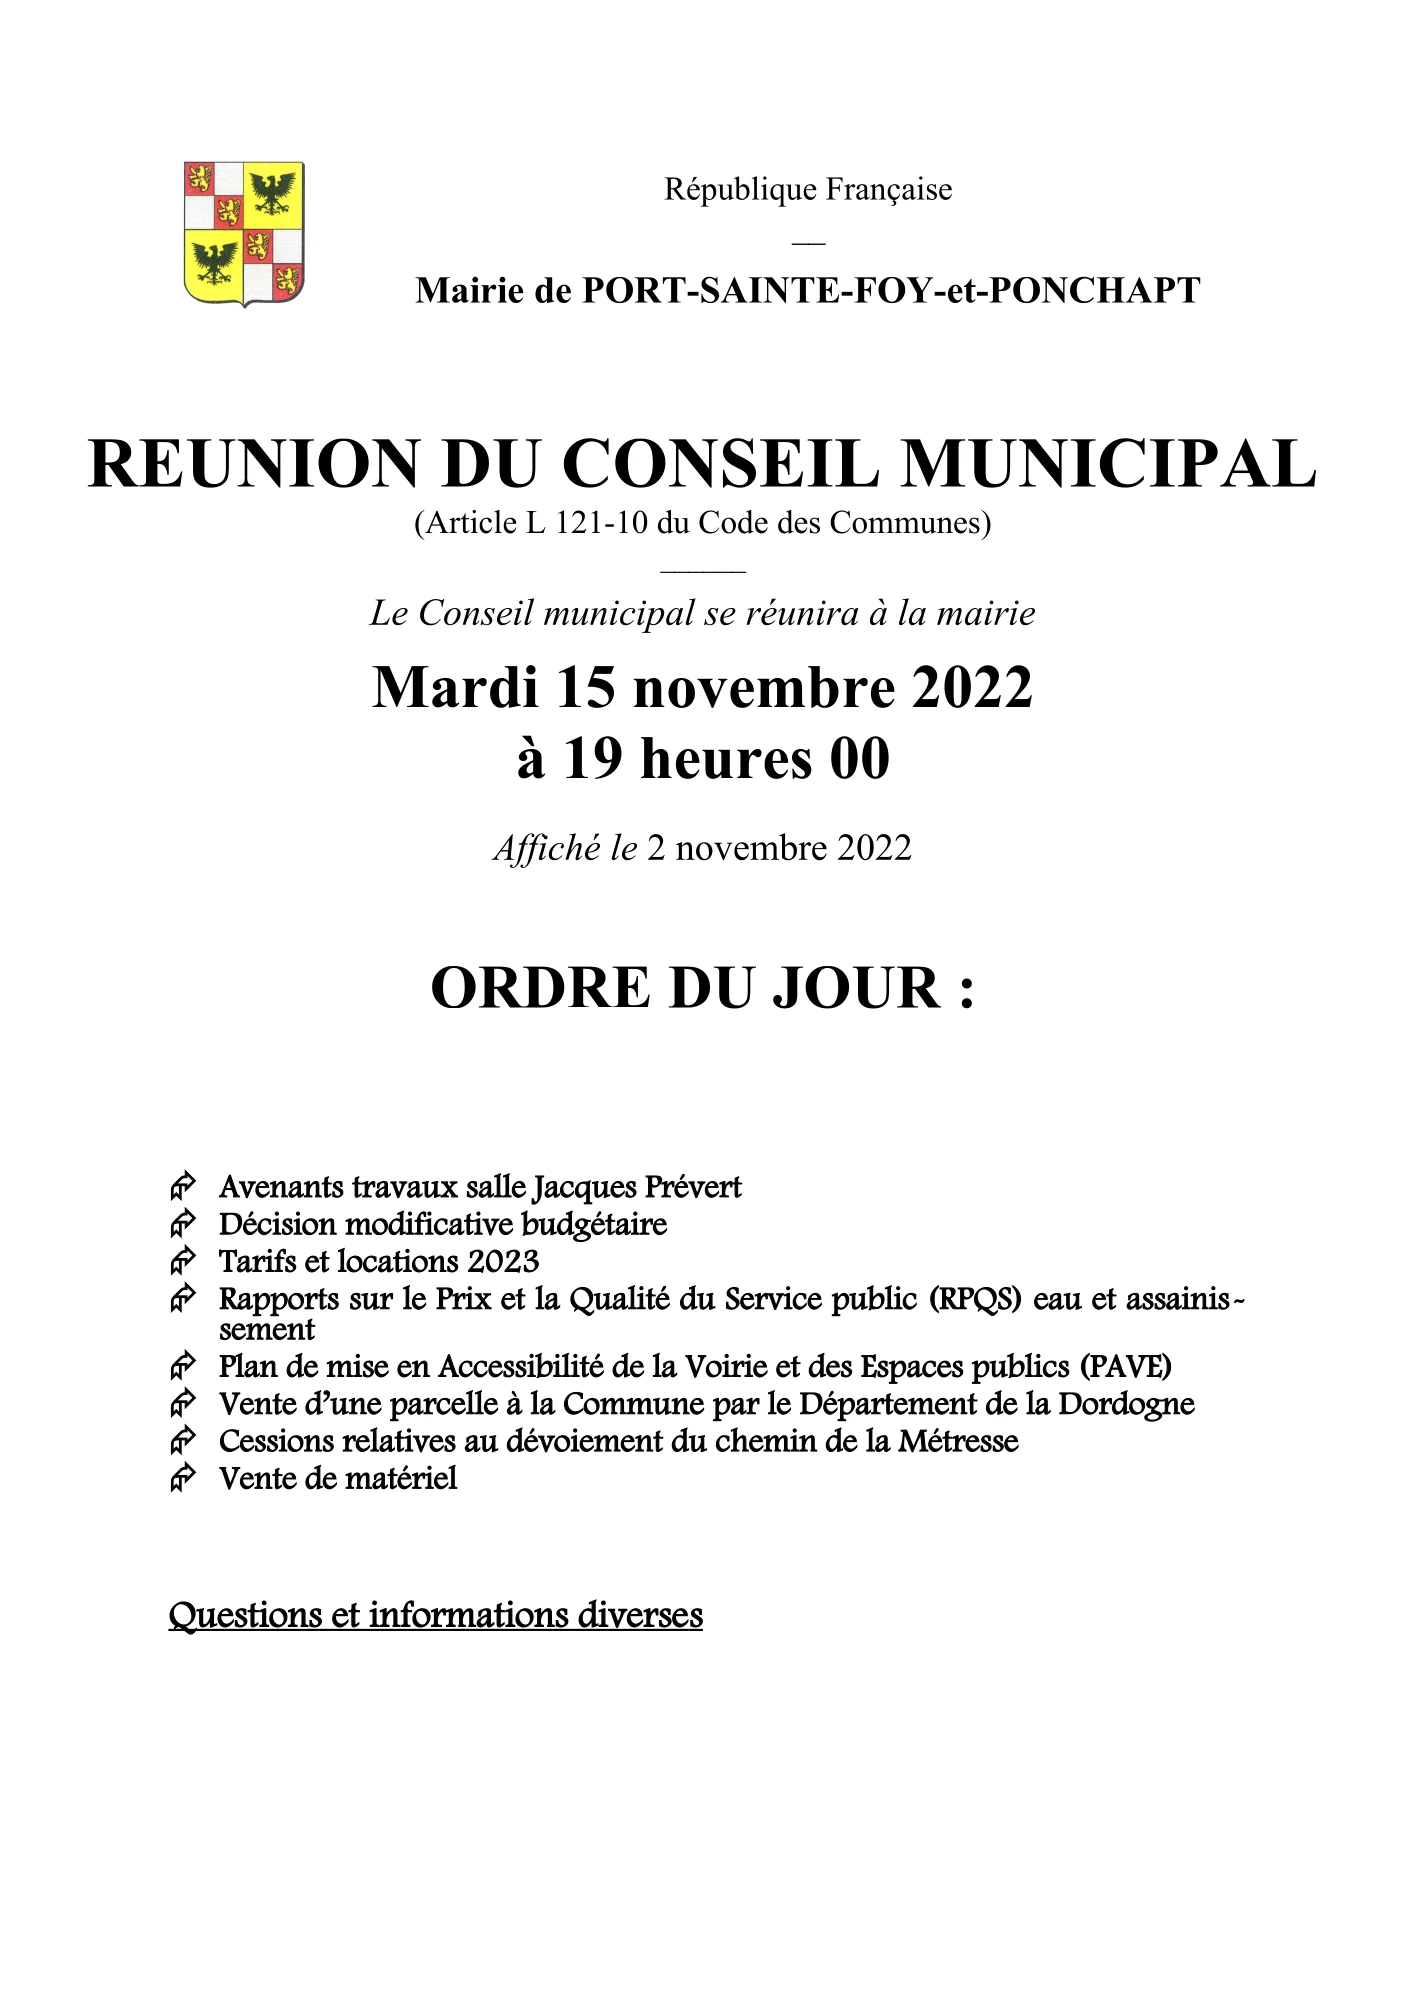 Ordre du jour du Conseil Municipal du 15 novembre 2022